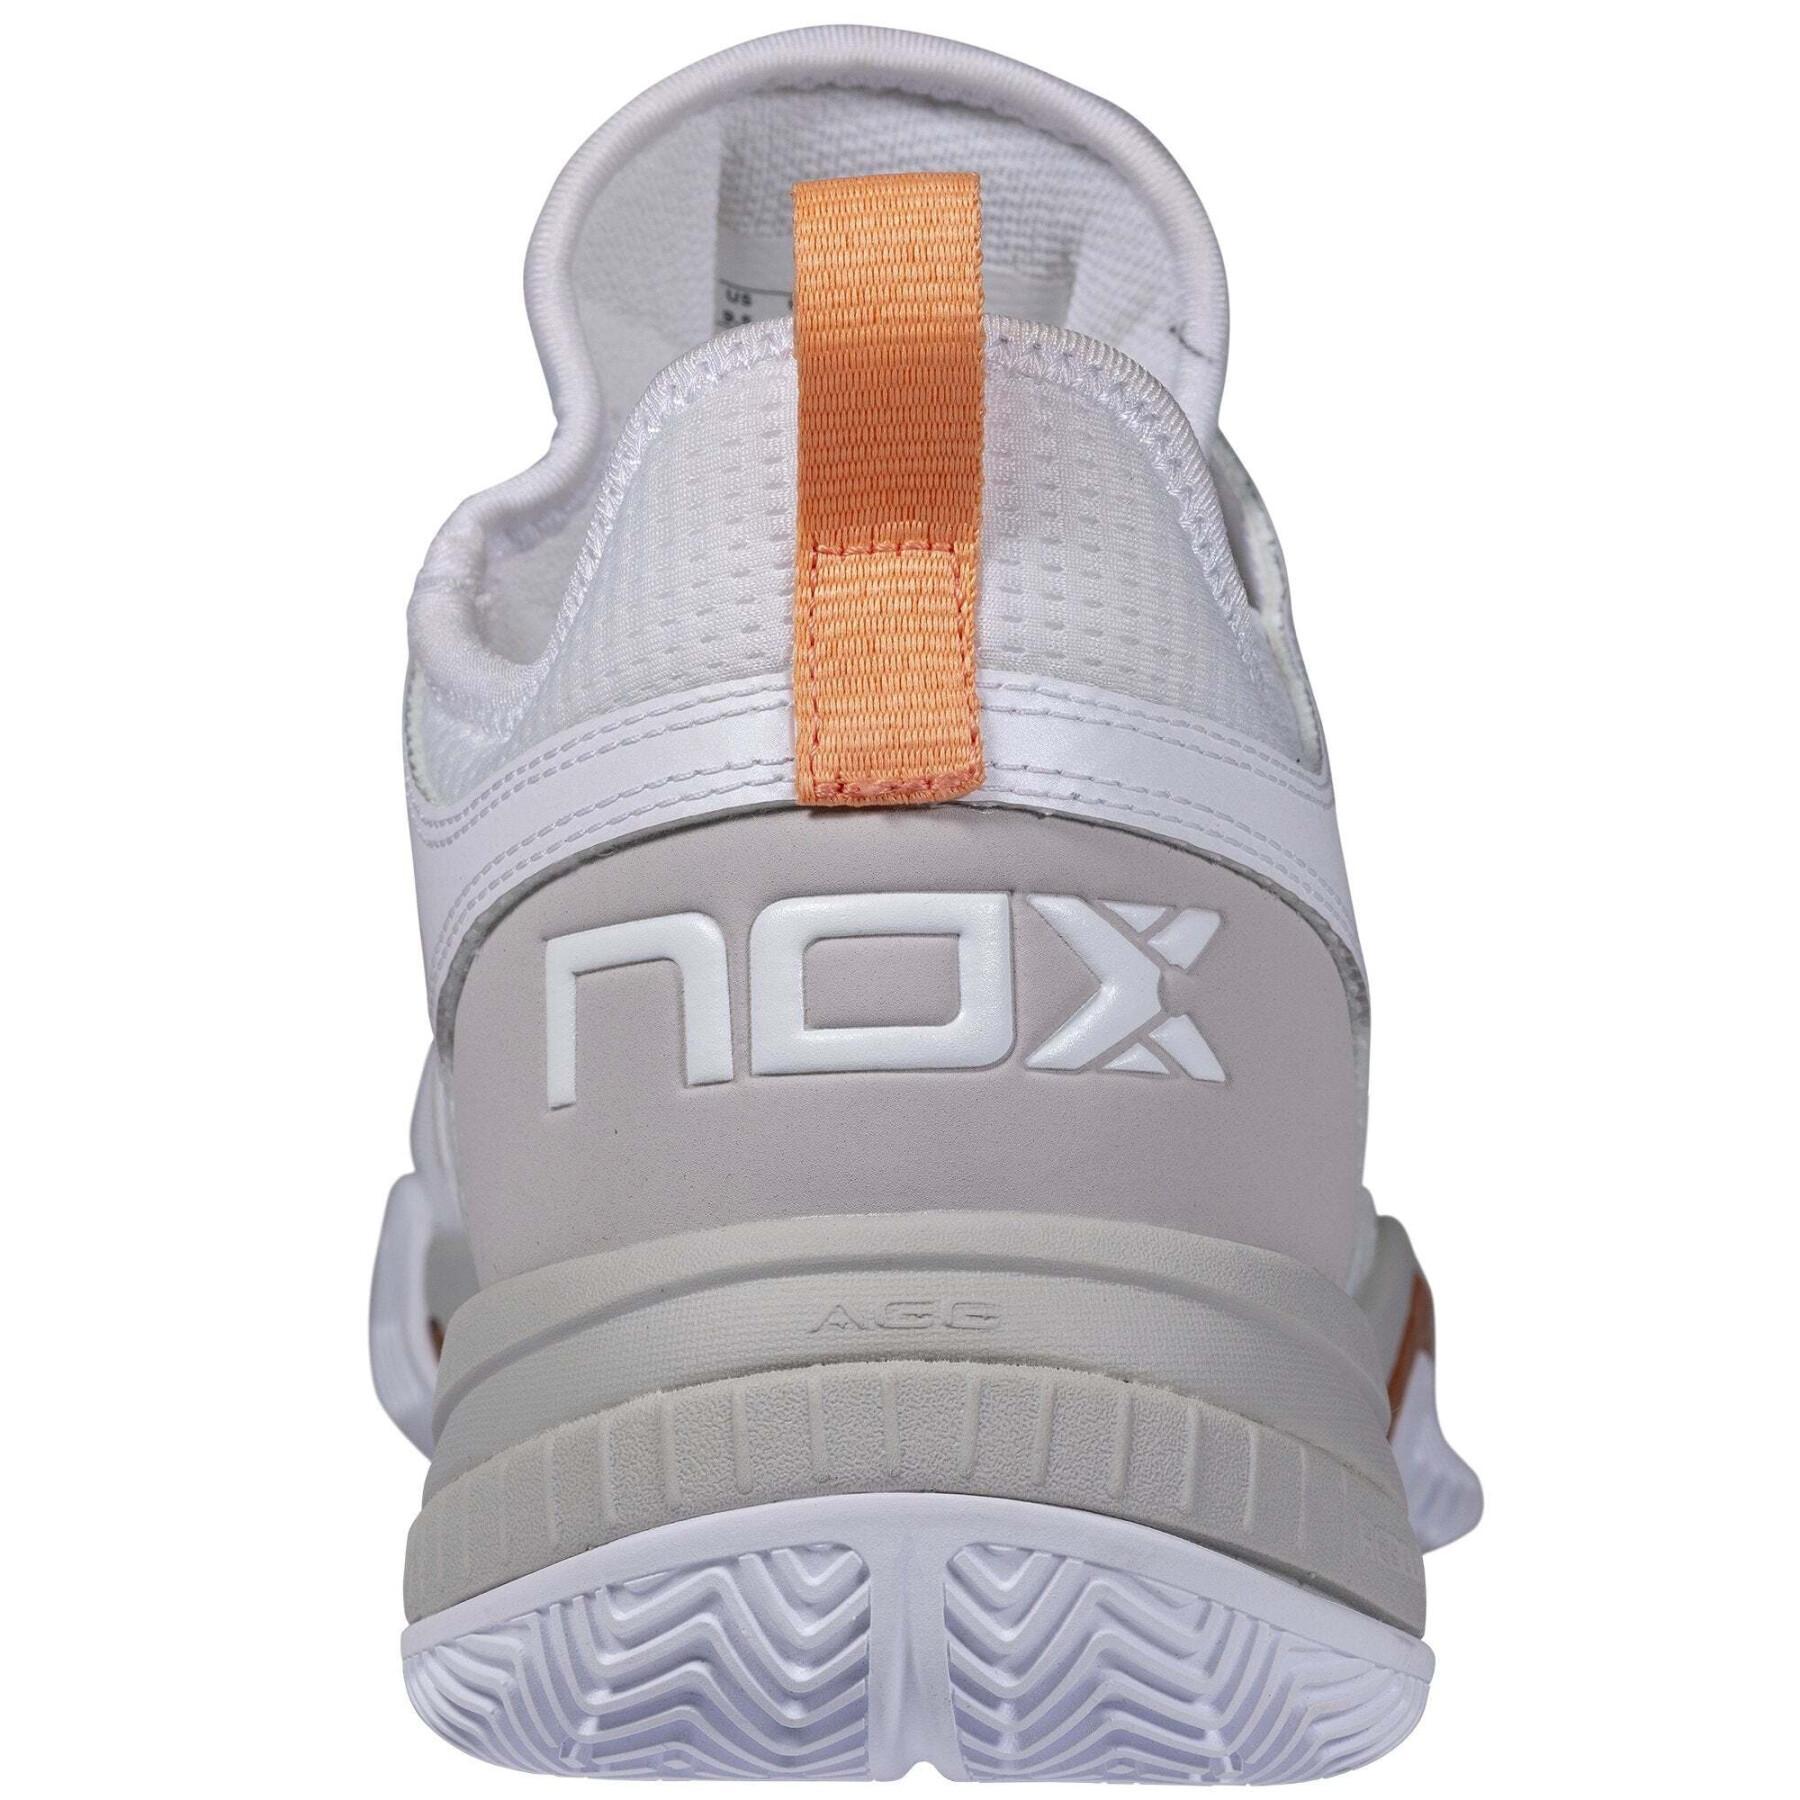 Chaussures de padel Nox Calzado Lux Nerbo